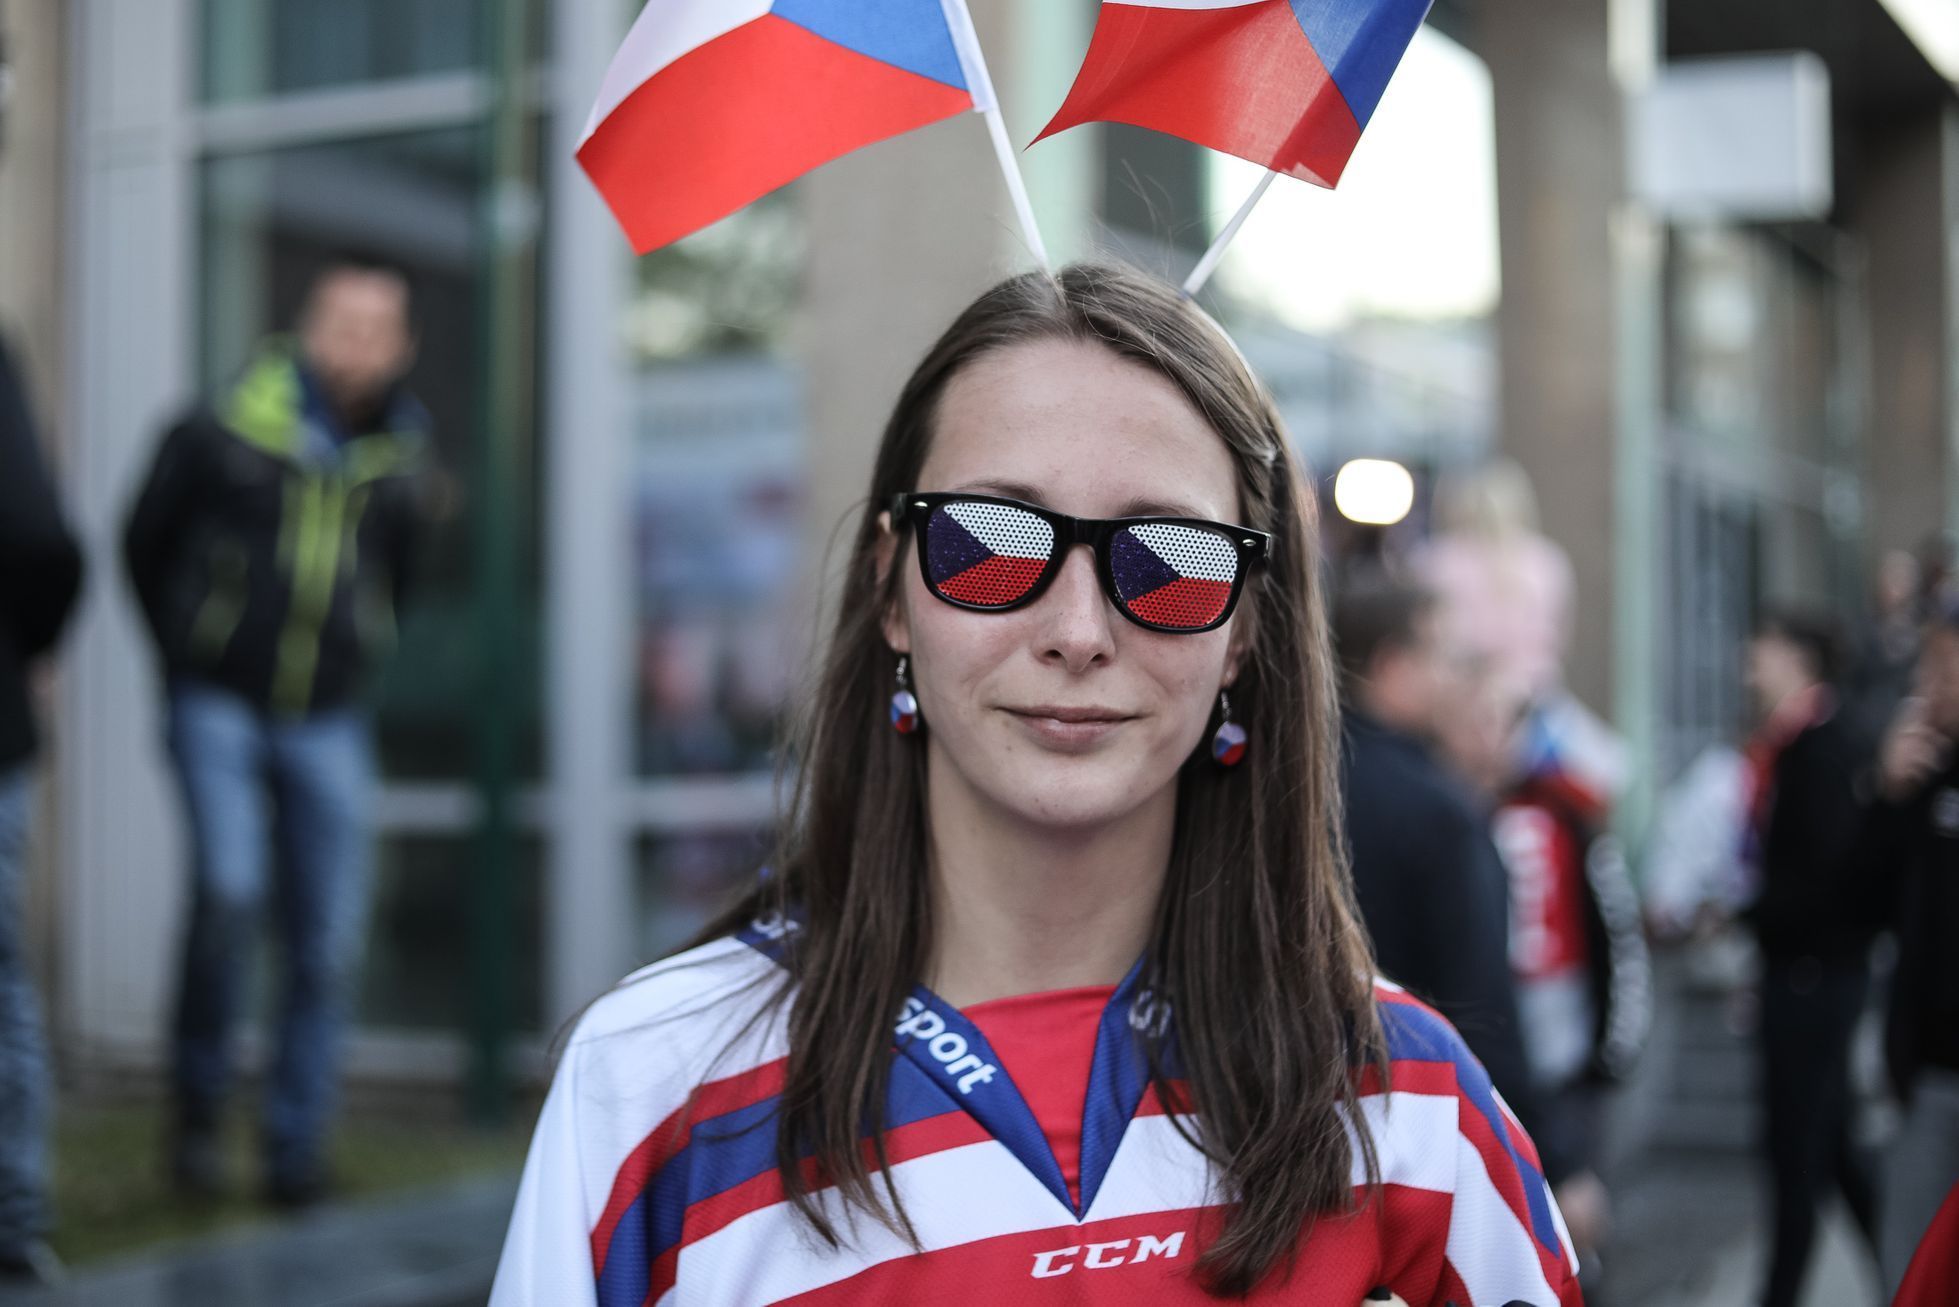 Autem na Mistrovství světa v hokeji v Bratislavě, rady, atmosféra a fanoušci